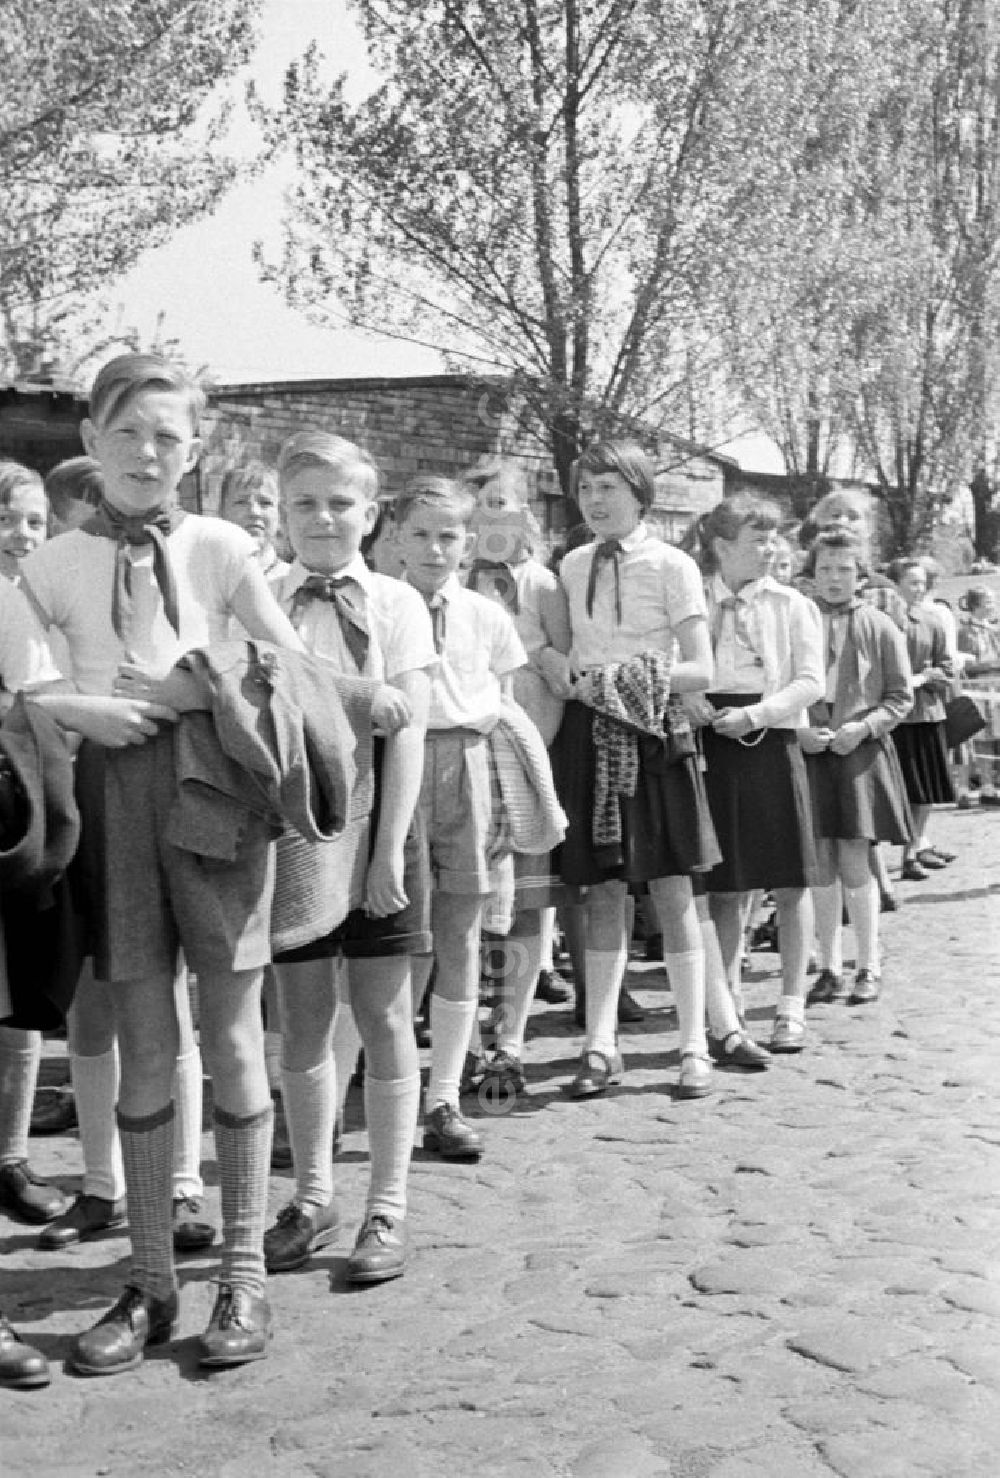 GDR photo archive: Leipzig - Junge Pioniere in Pionierkleidung und Halstuch versammeln sich vor ihrer Schule in Leipzig, um geschlossen an der Demonstration zum 1. Mai 1957 teilzunehmen.